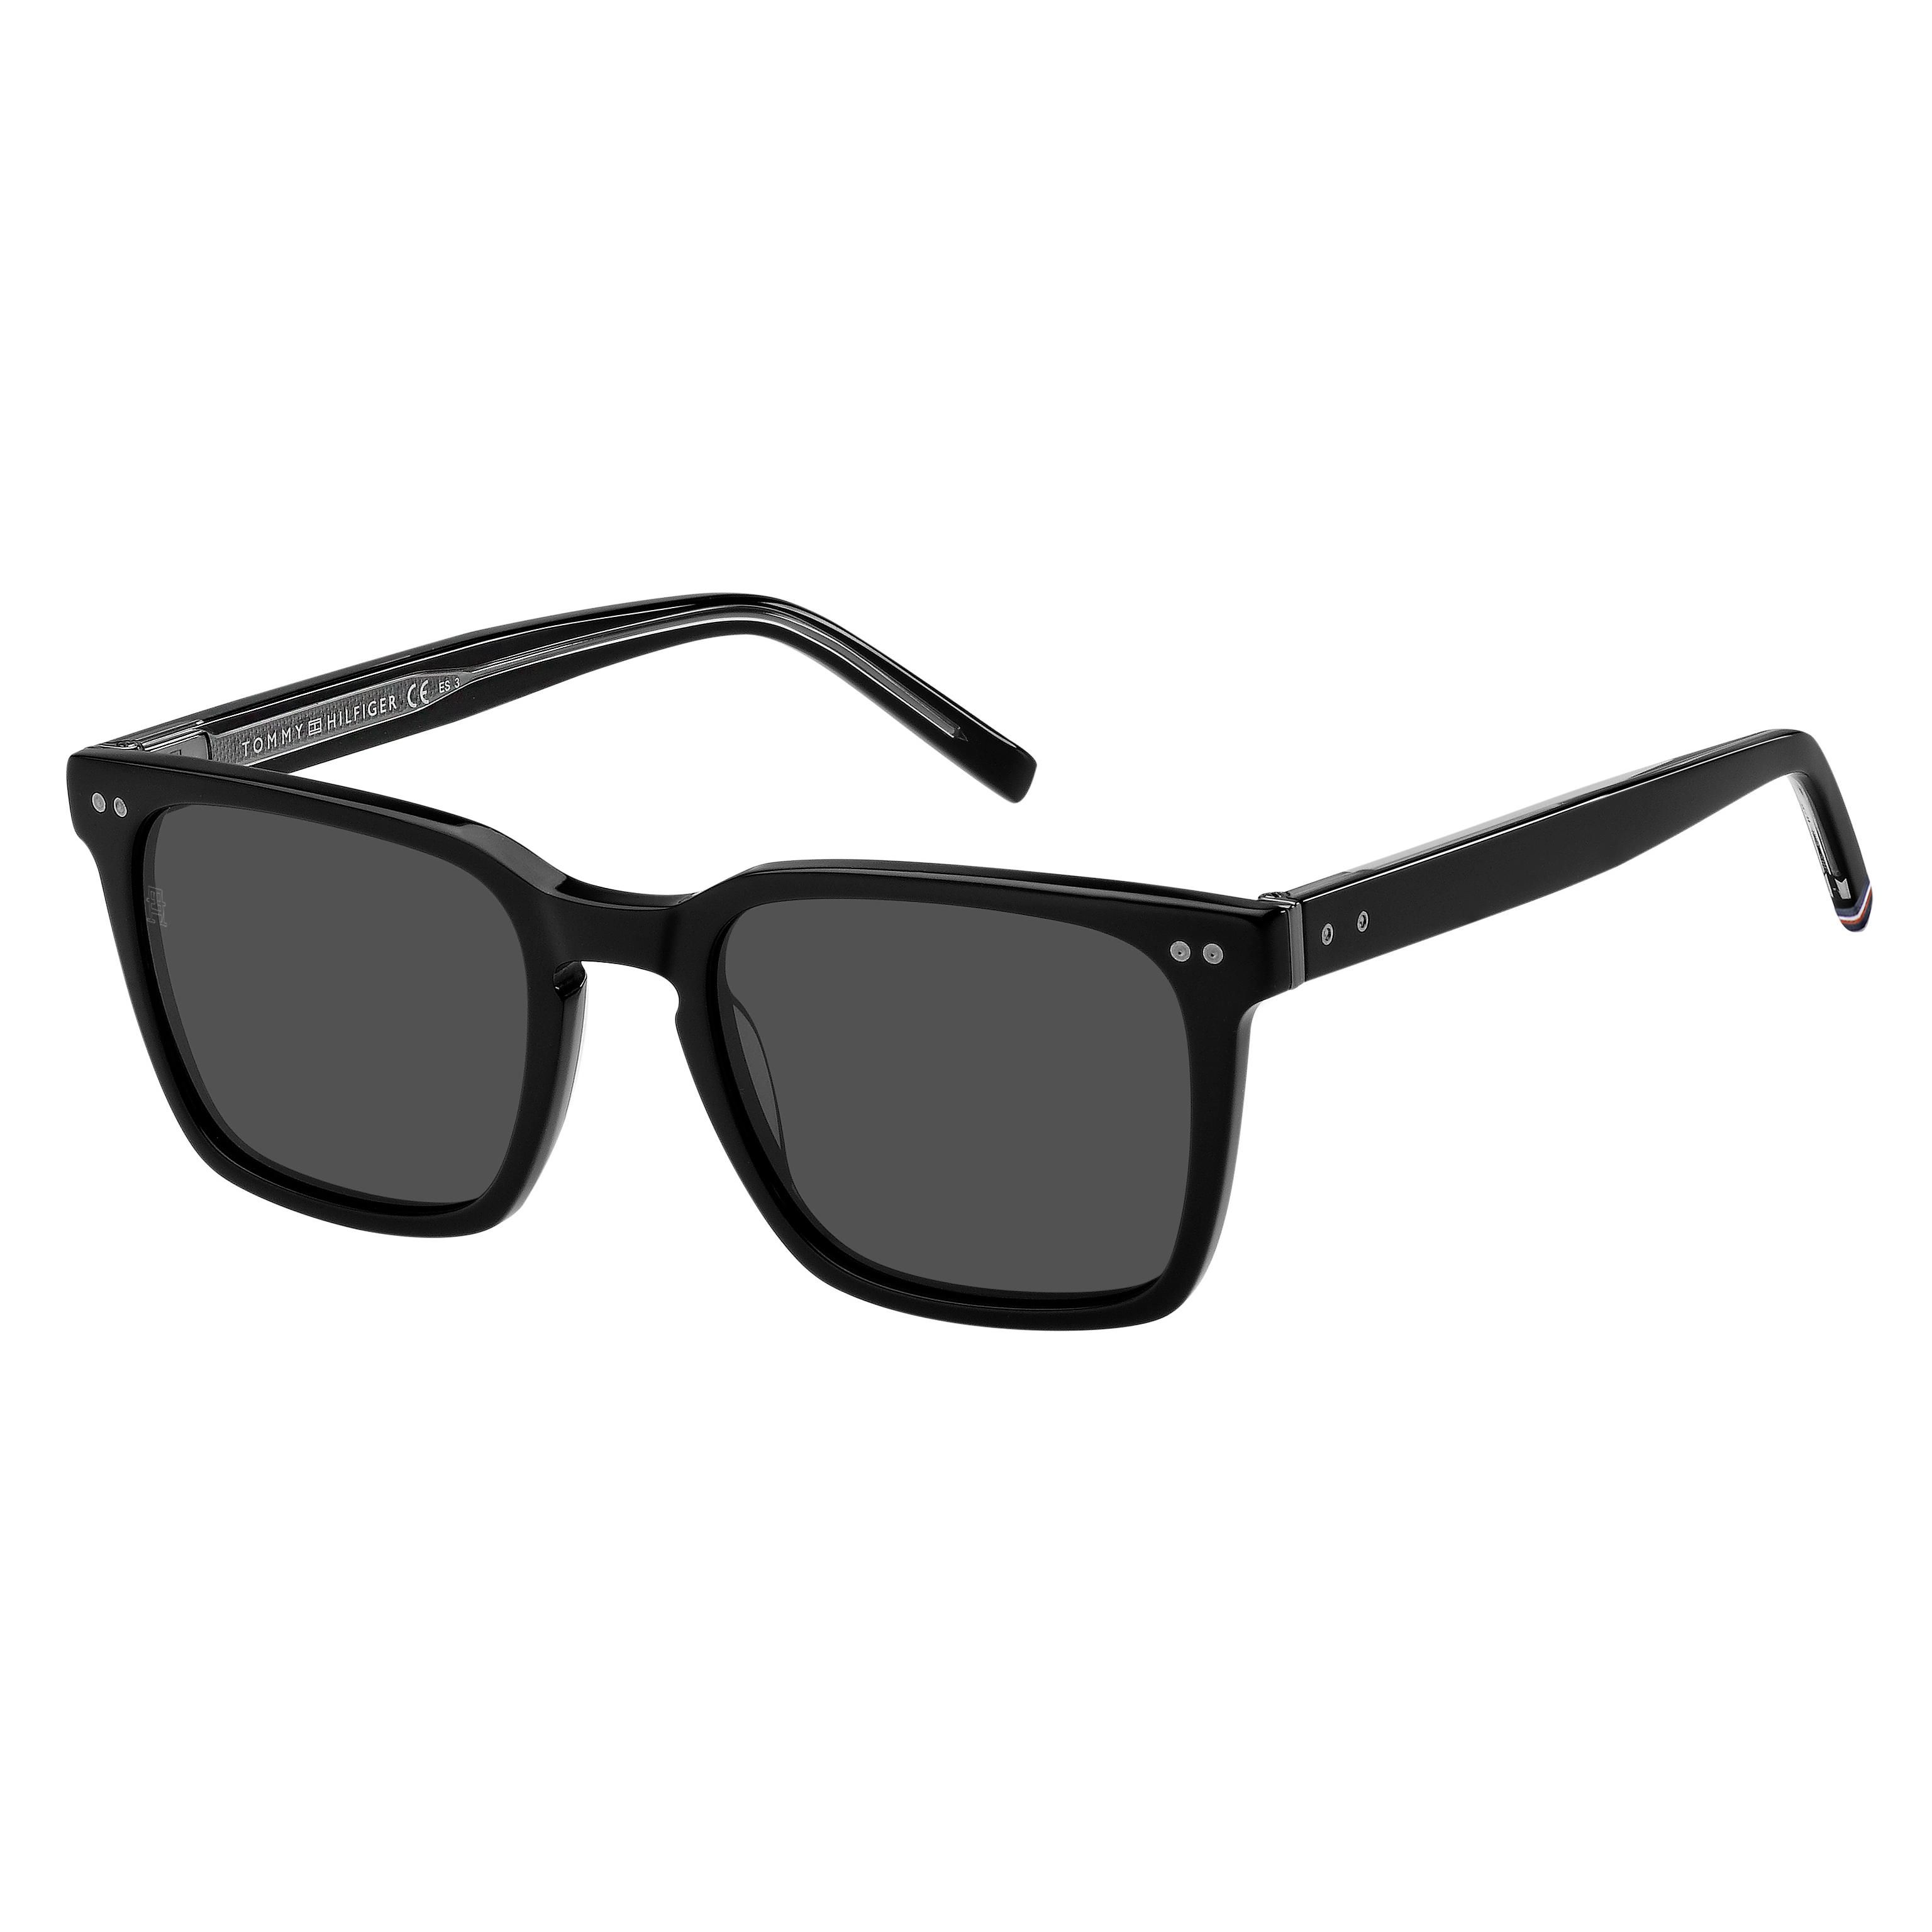 TH 1971 S Square Sunglasses 807 - size 53